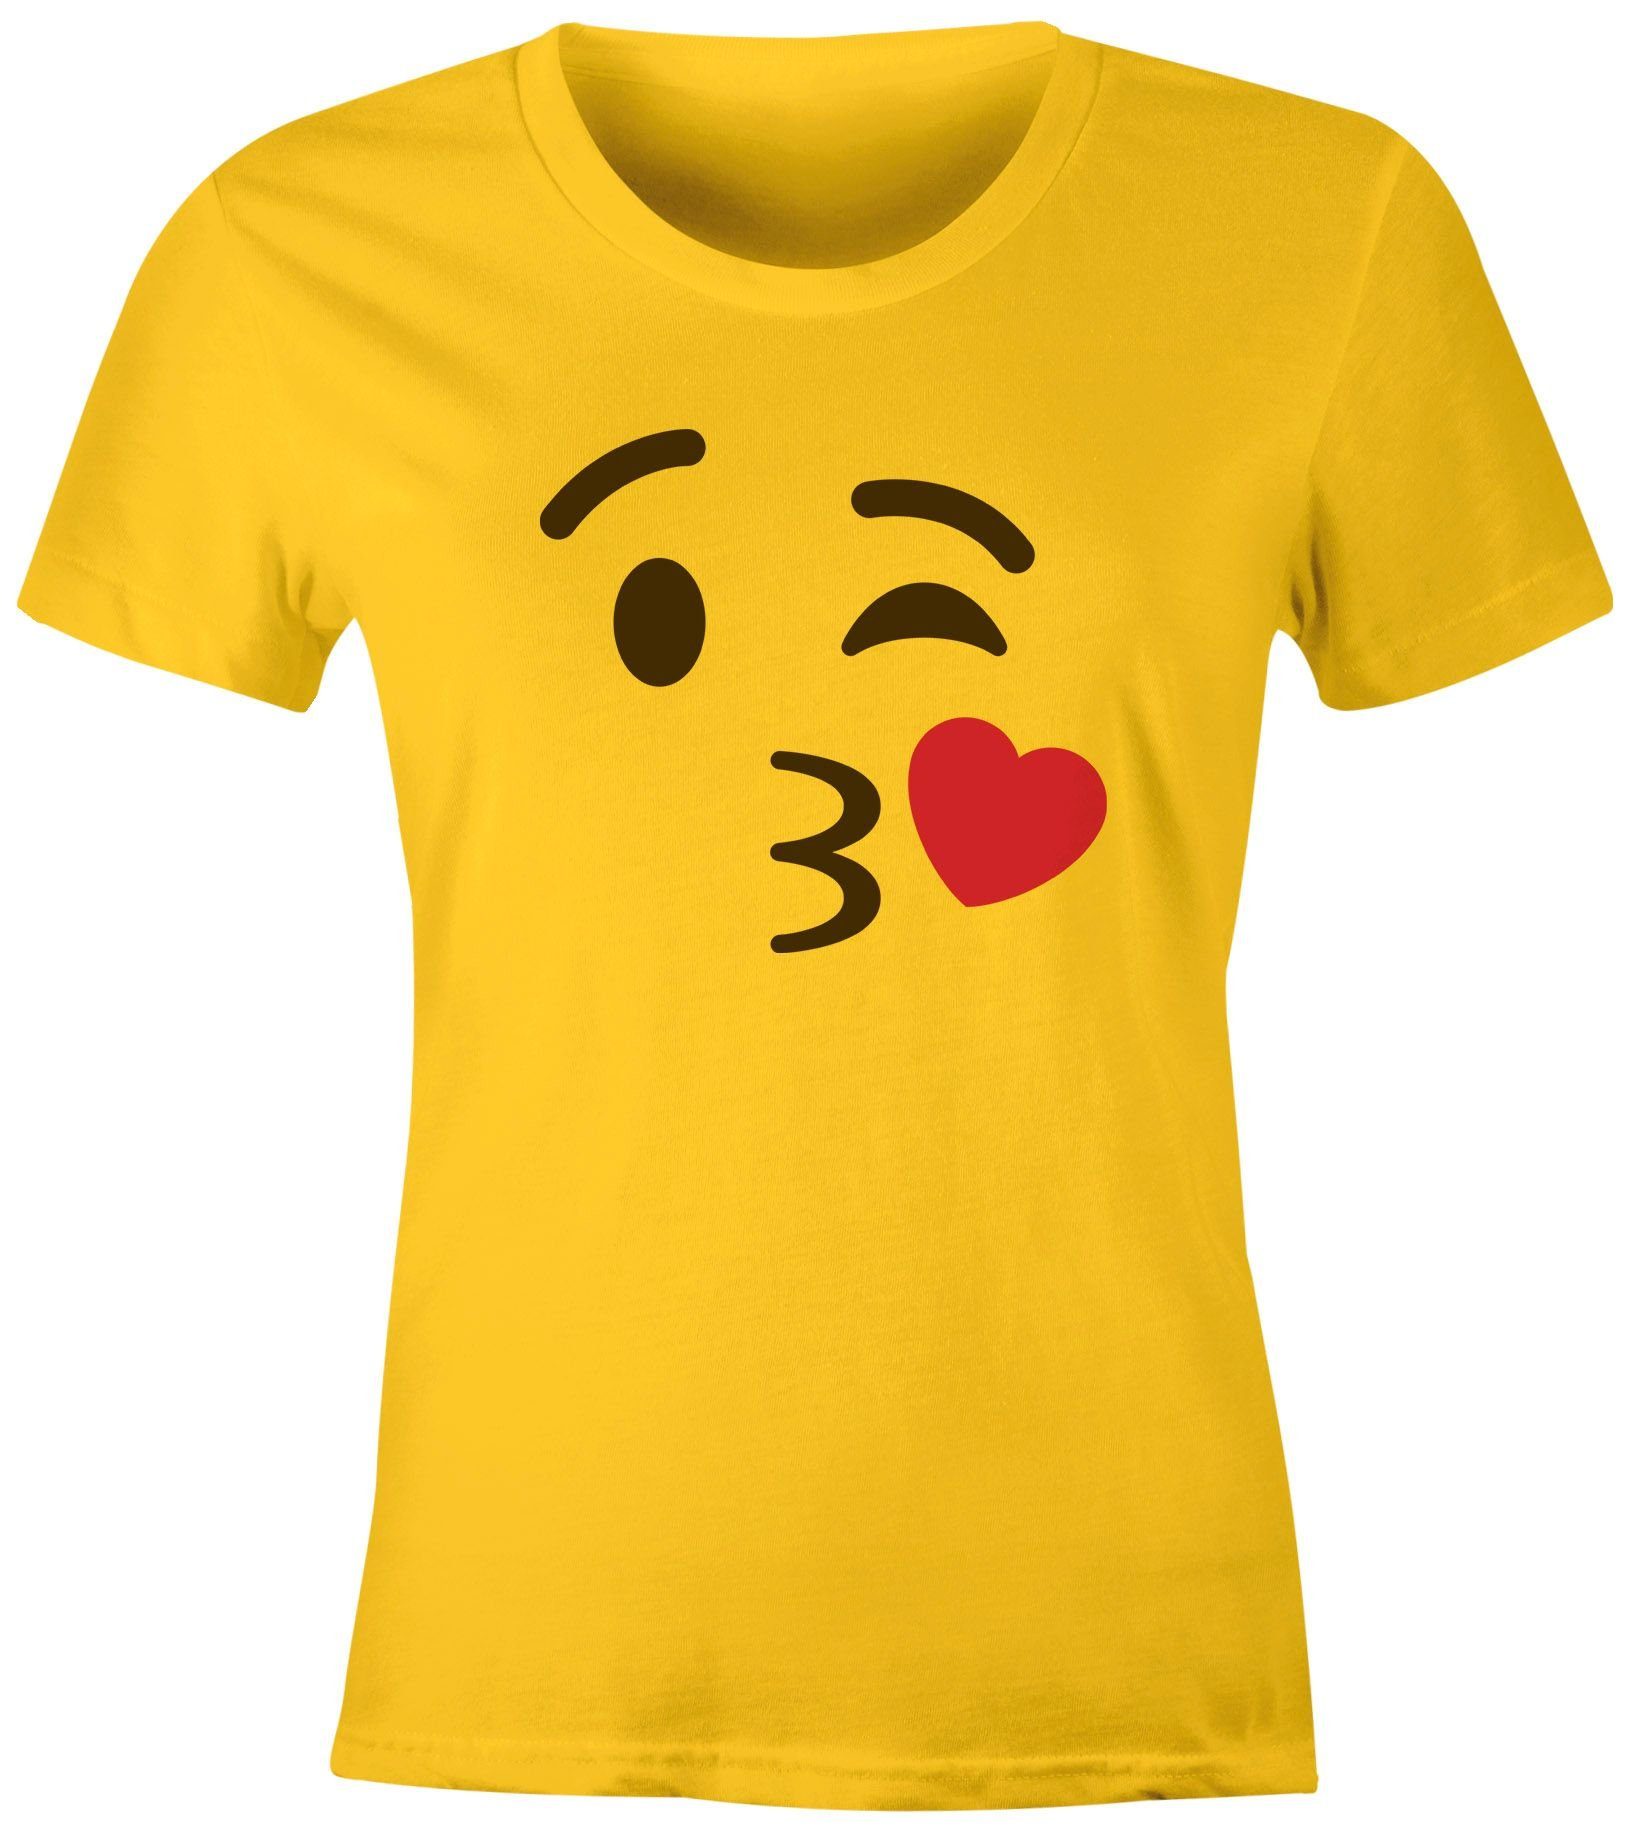 MoonWorks Print-Shirt Damen T-Shirt Emoticon Gruppenkostüm Fasching Karneval Junggesellenabschied JGA lustig Fun-Shirt Moonworks® mit Print Küsschen gelb